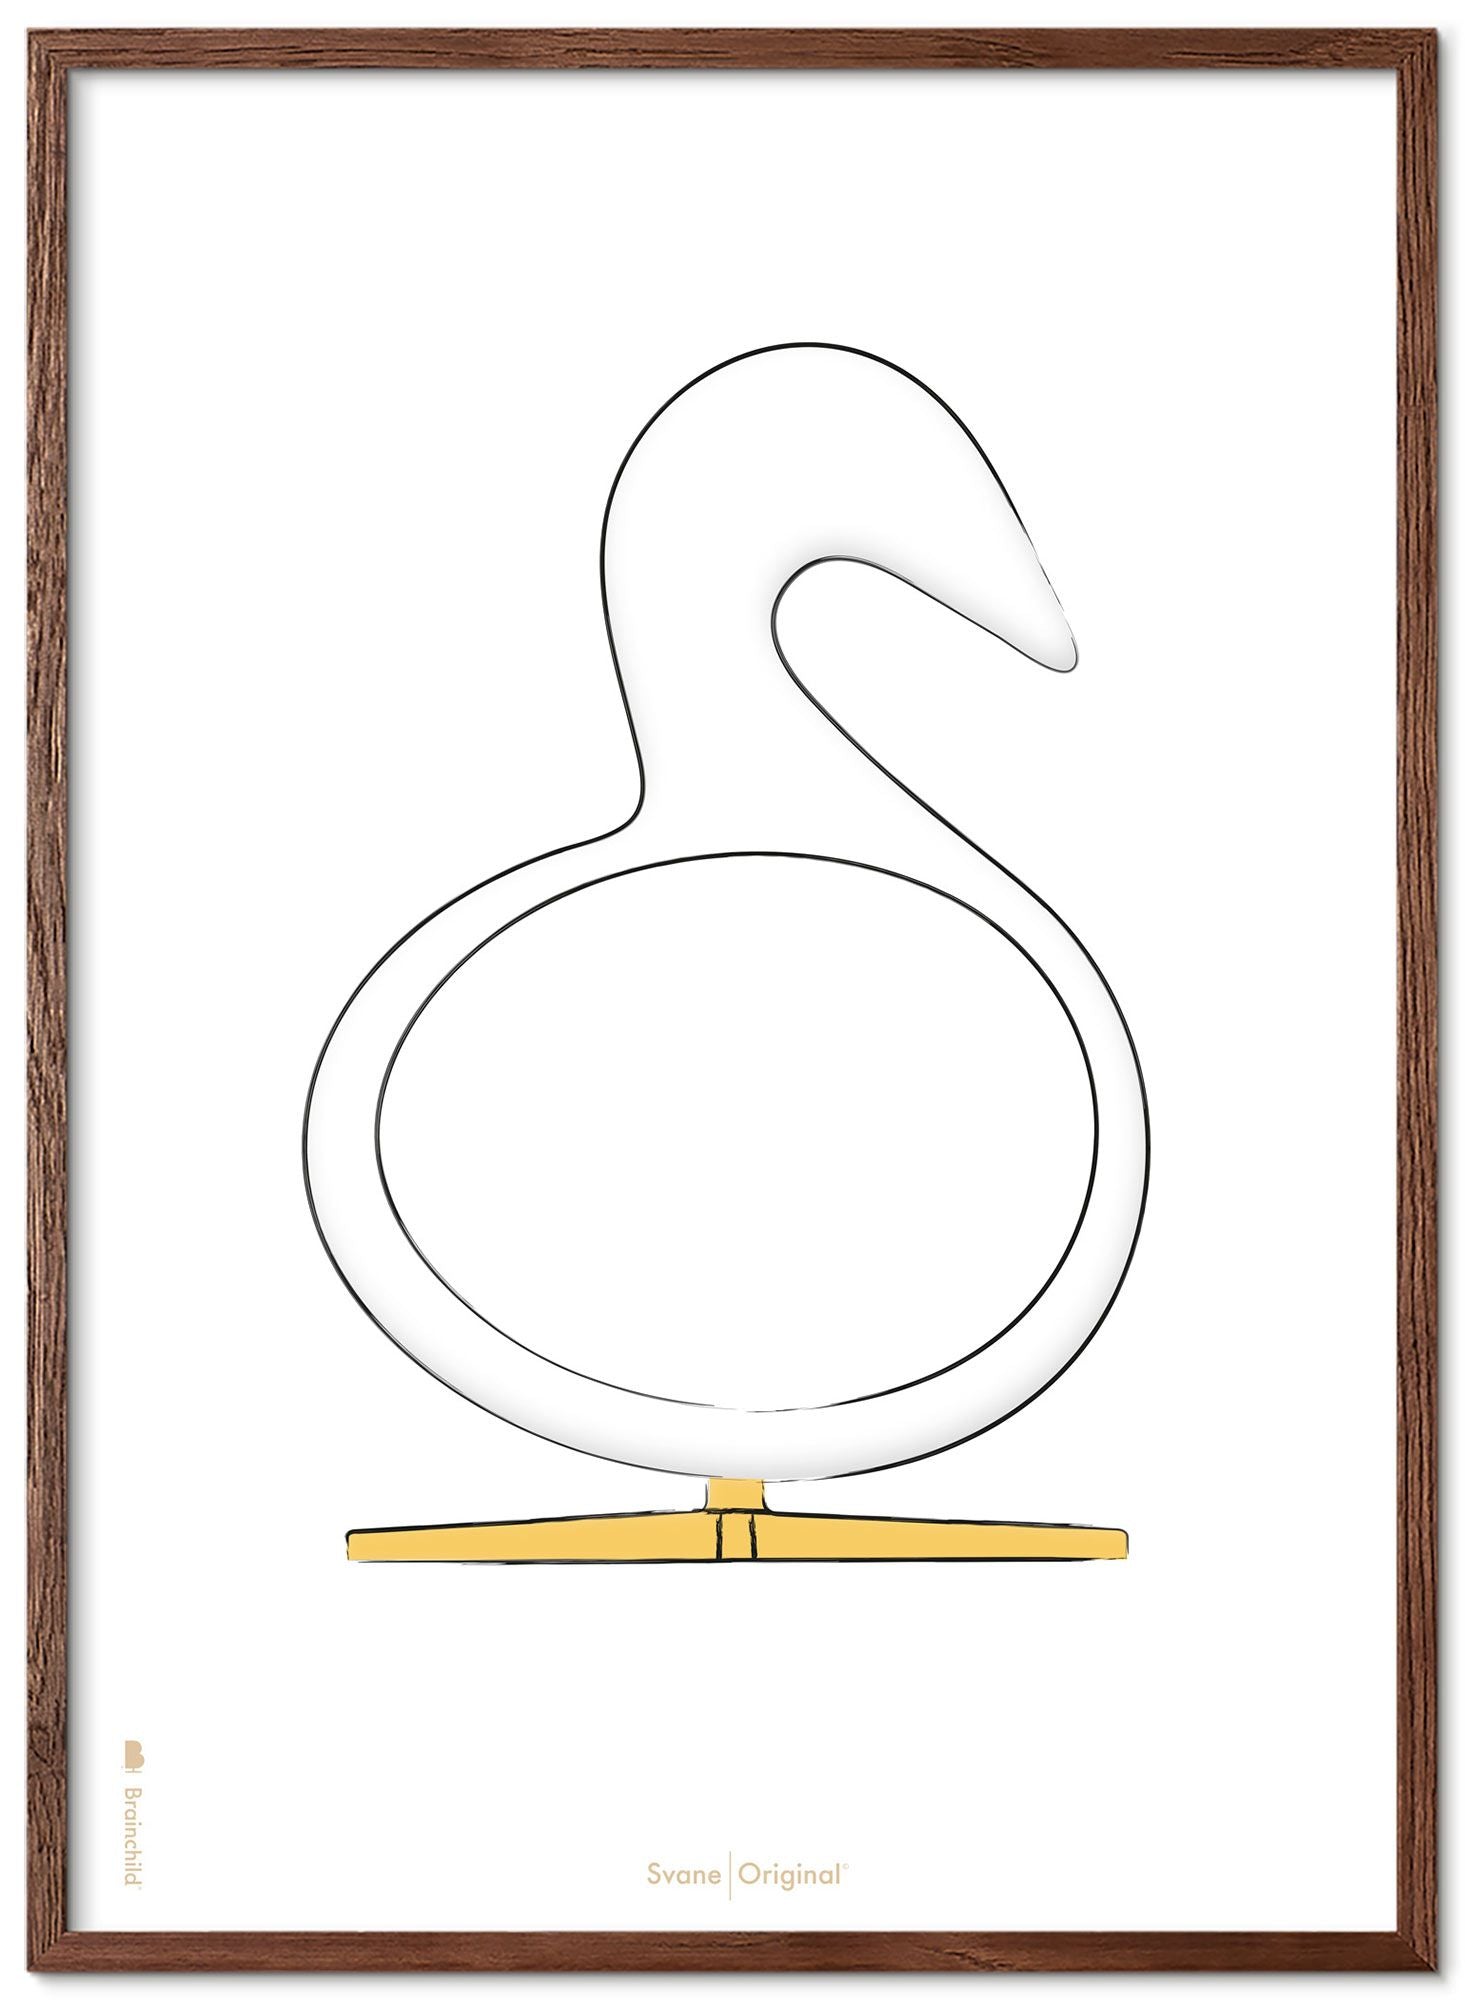 Brainchild Swan Design Schets Poster Gemaakt Van Donker Hout 70x100 Cm, Witte Achtergrond